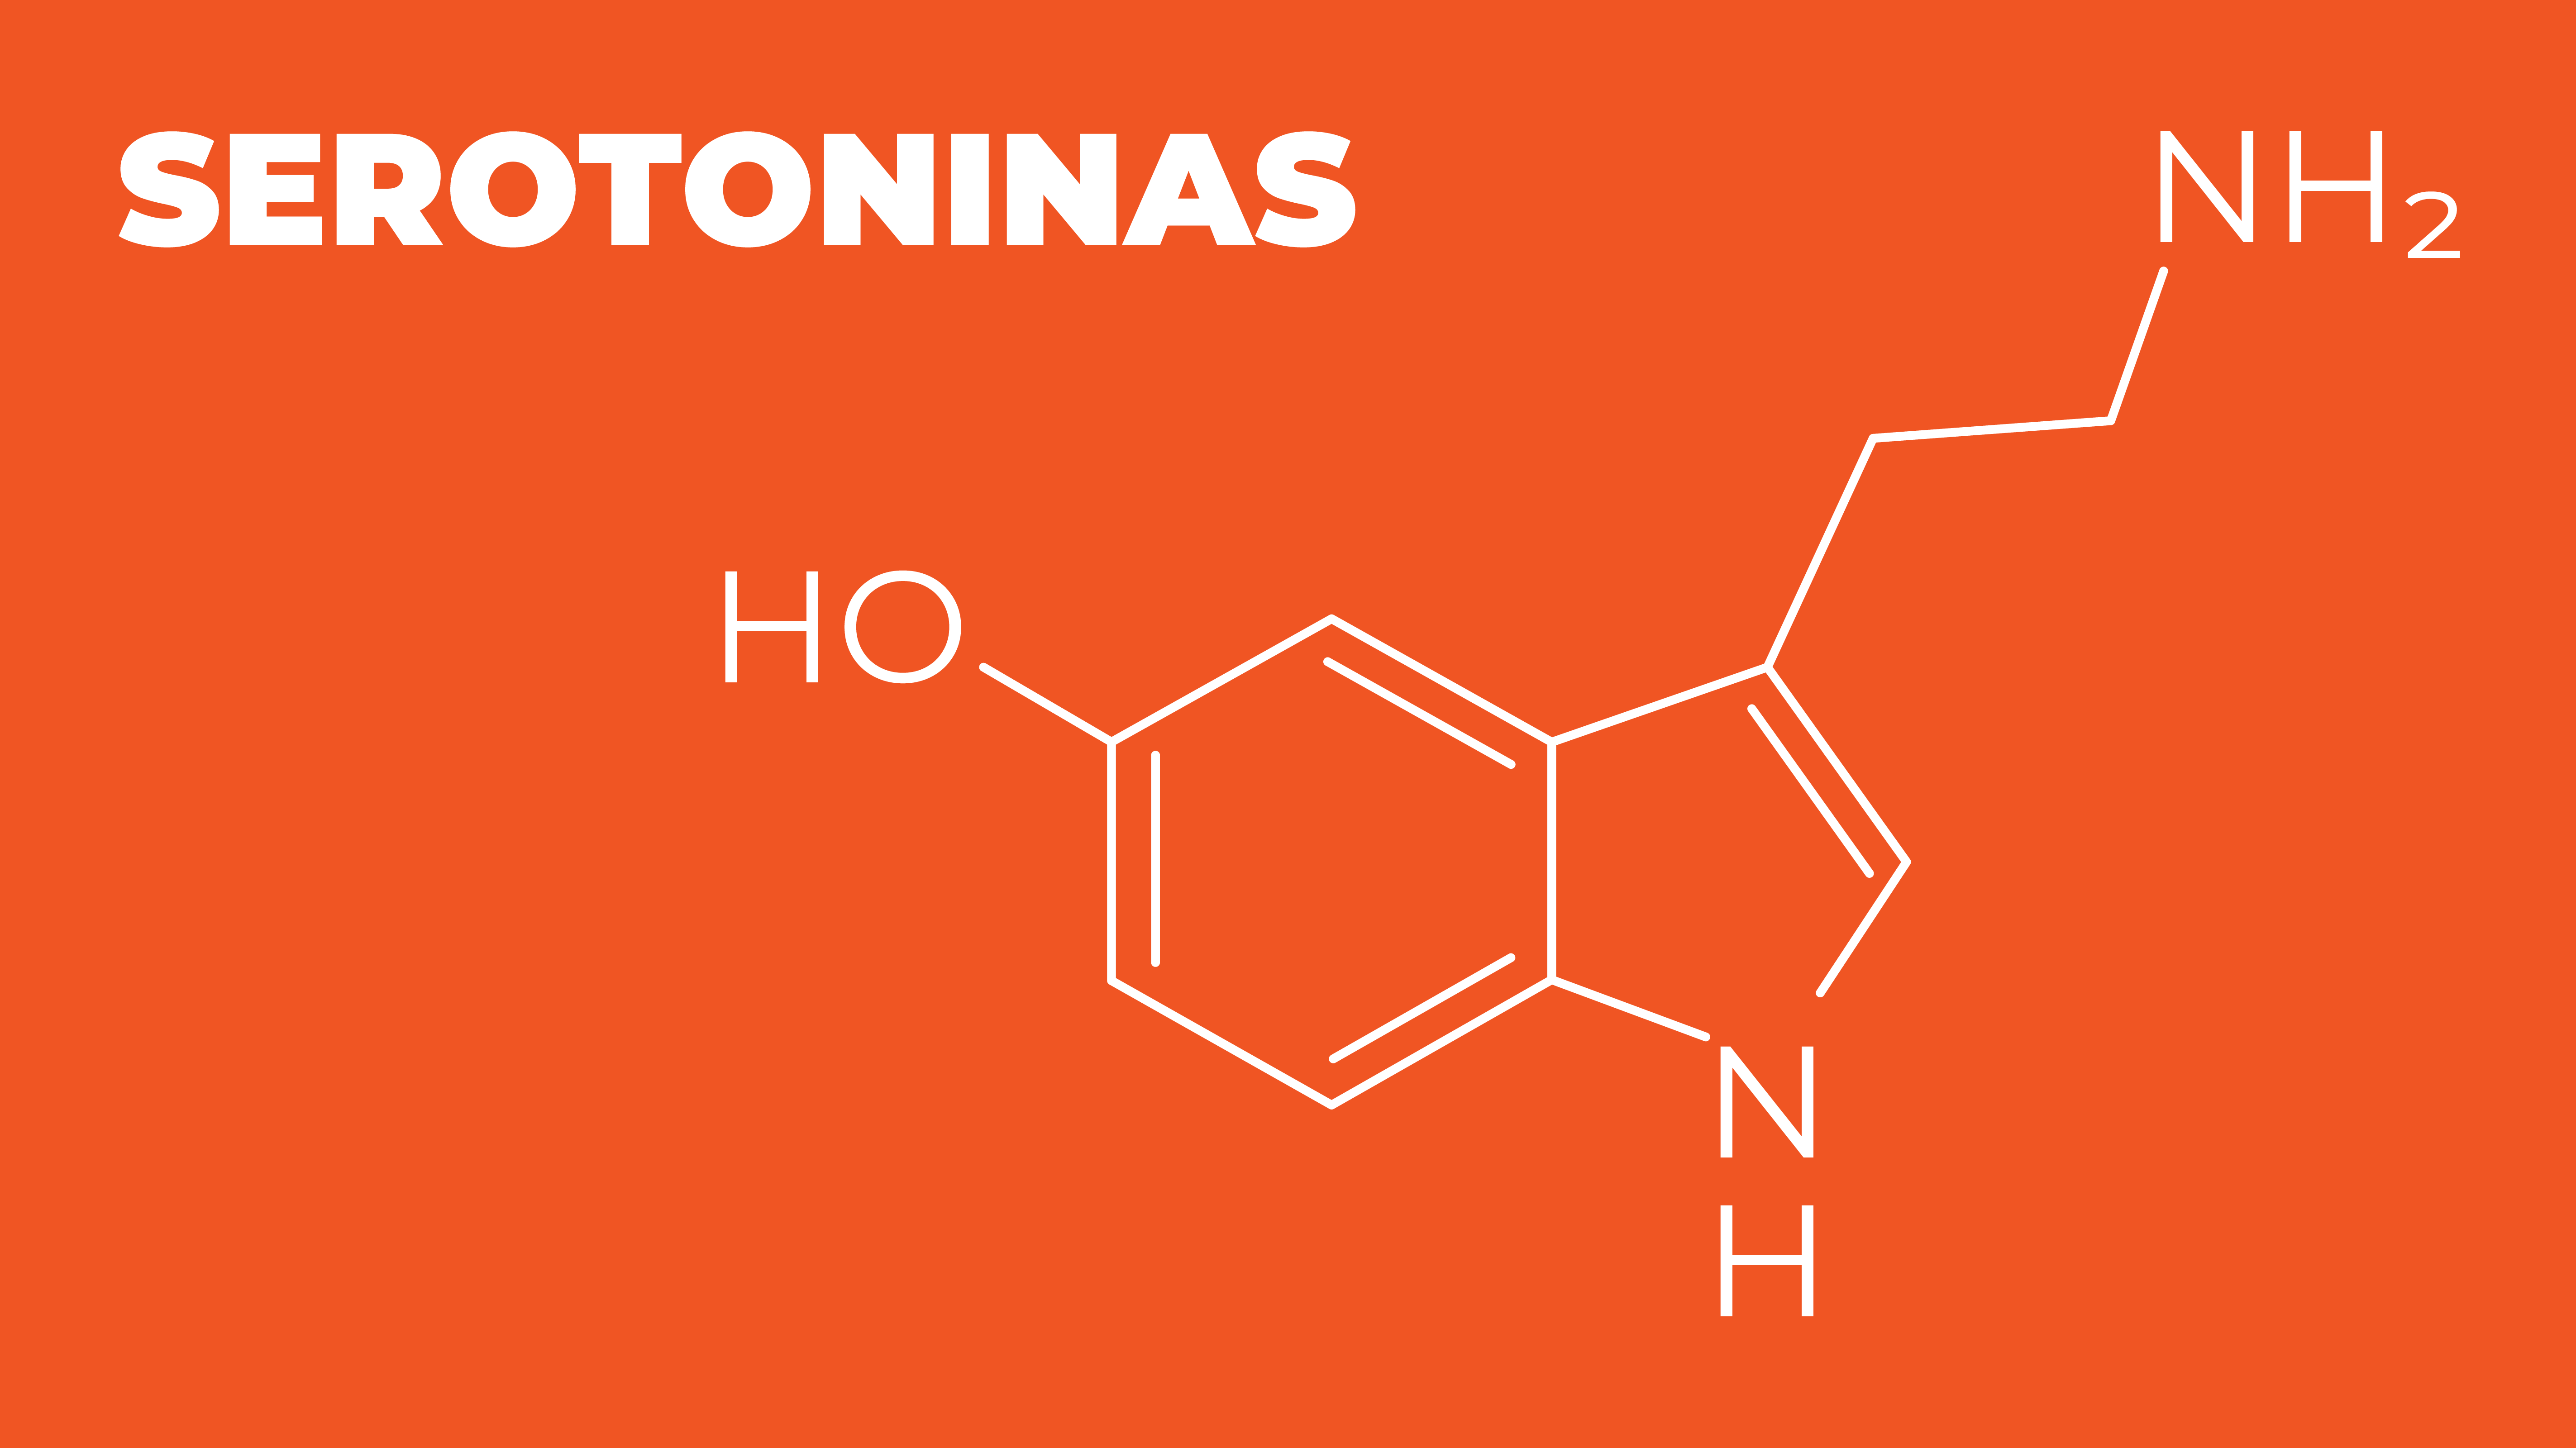 Serotoninas